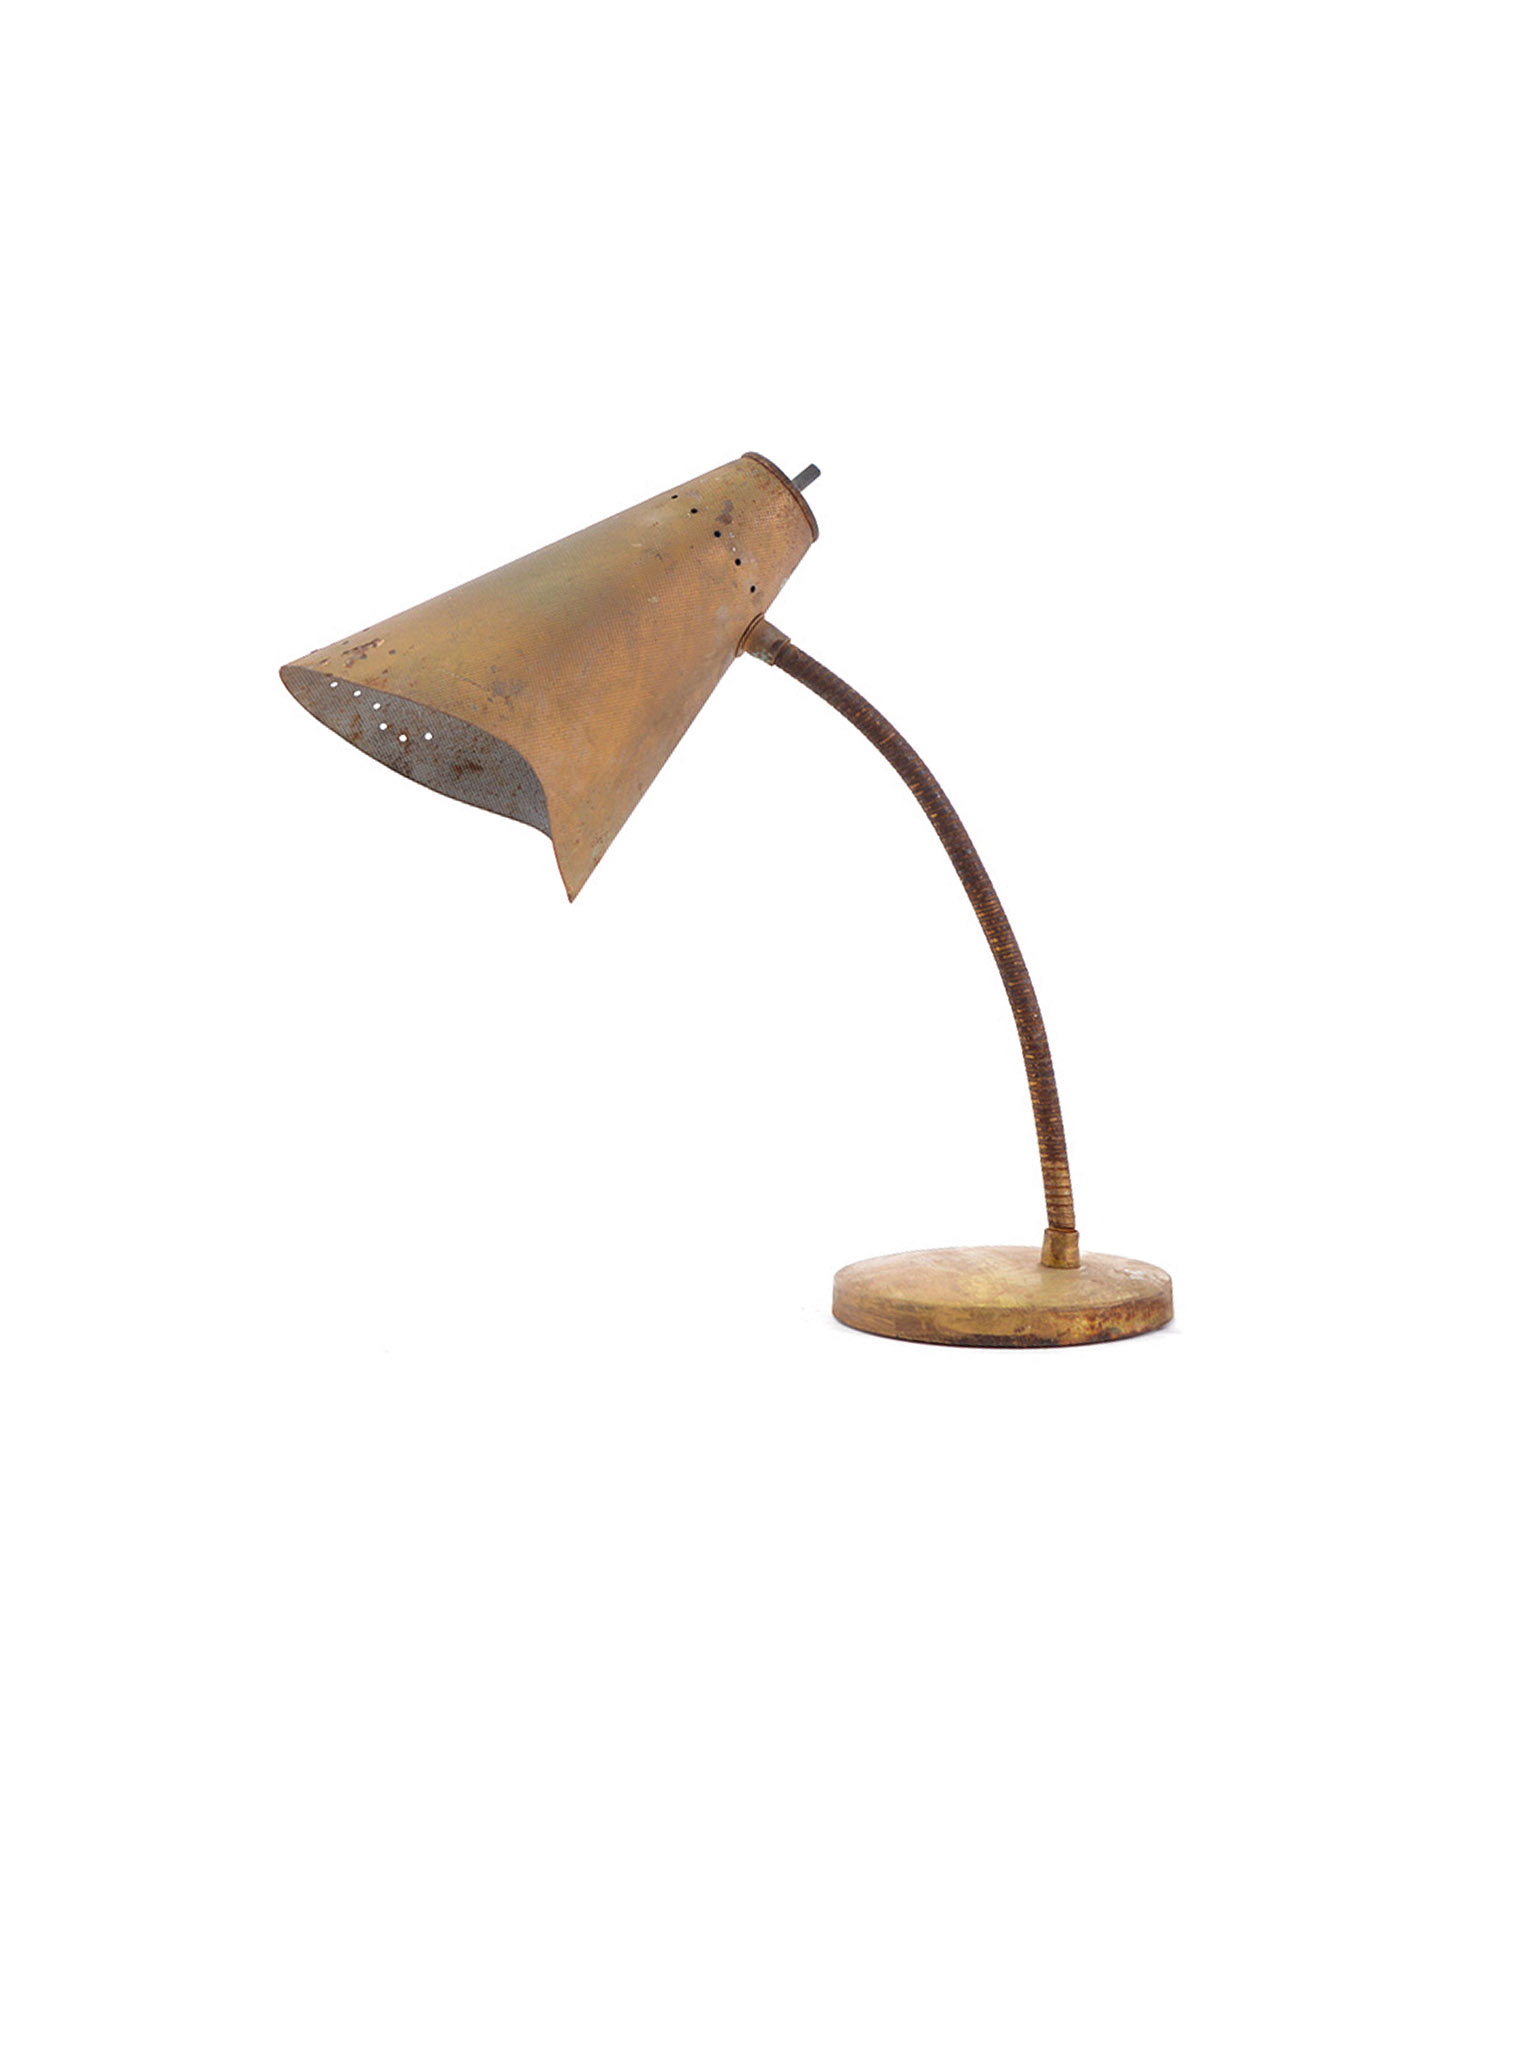 ROUGH AMERICAN DESK LAMP